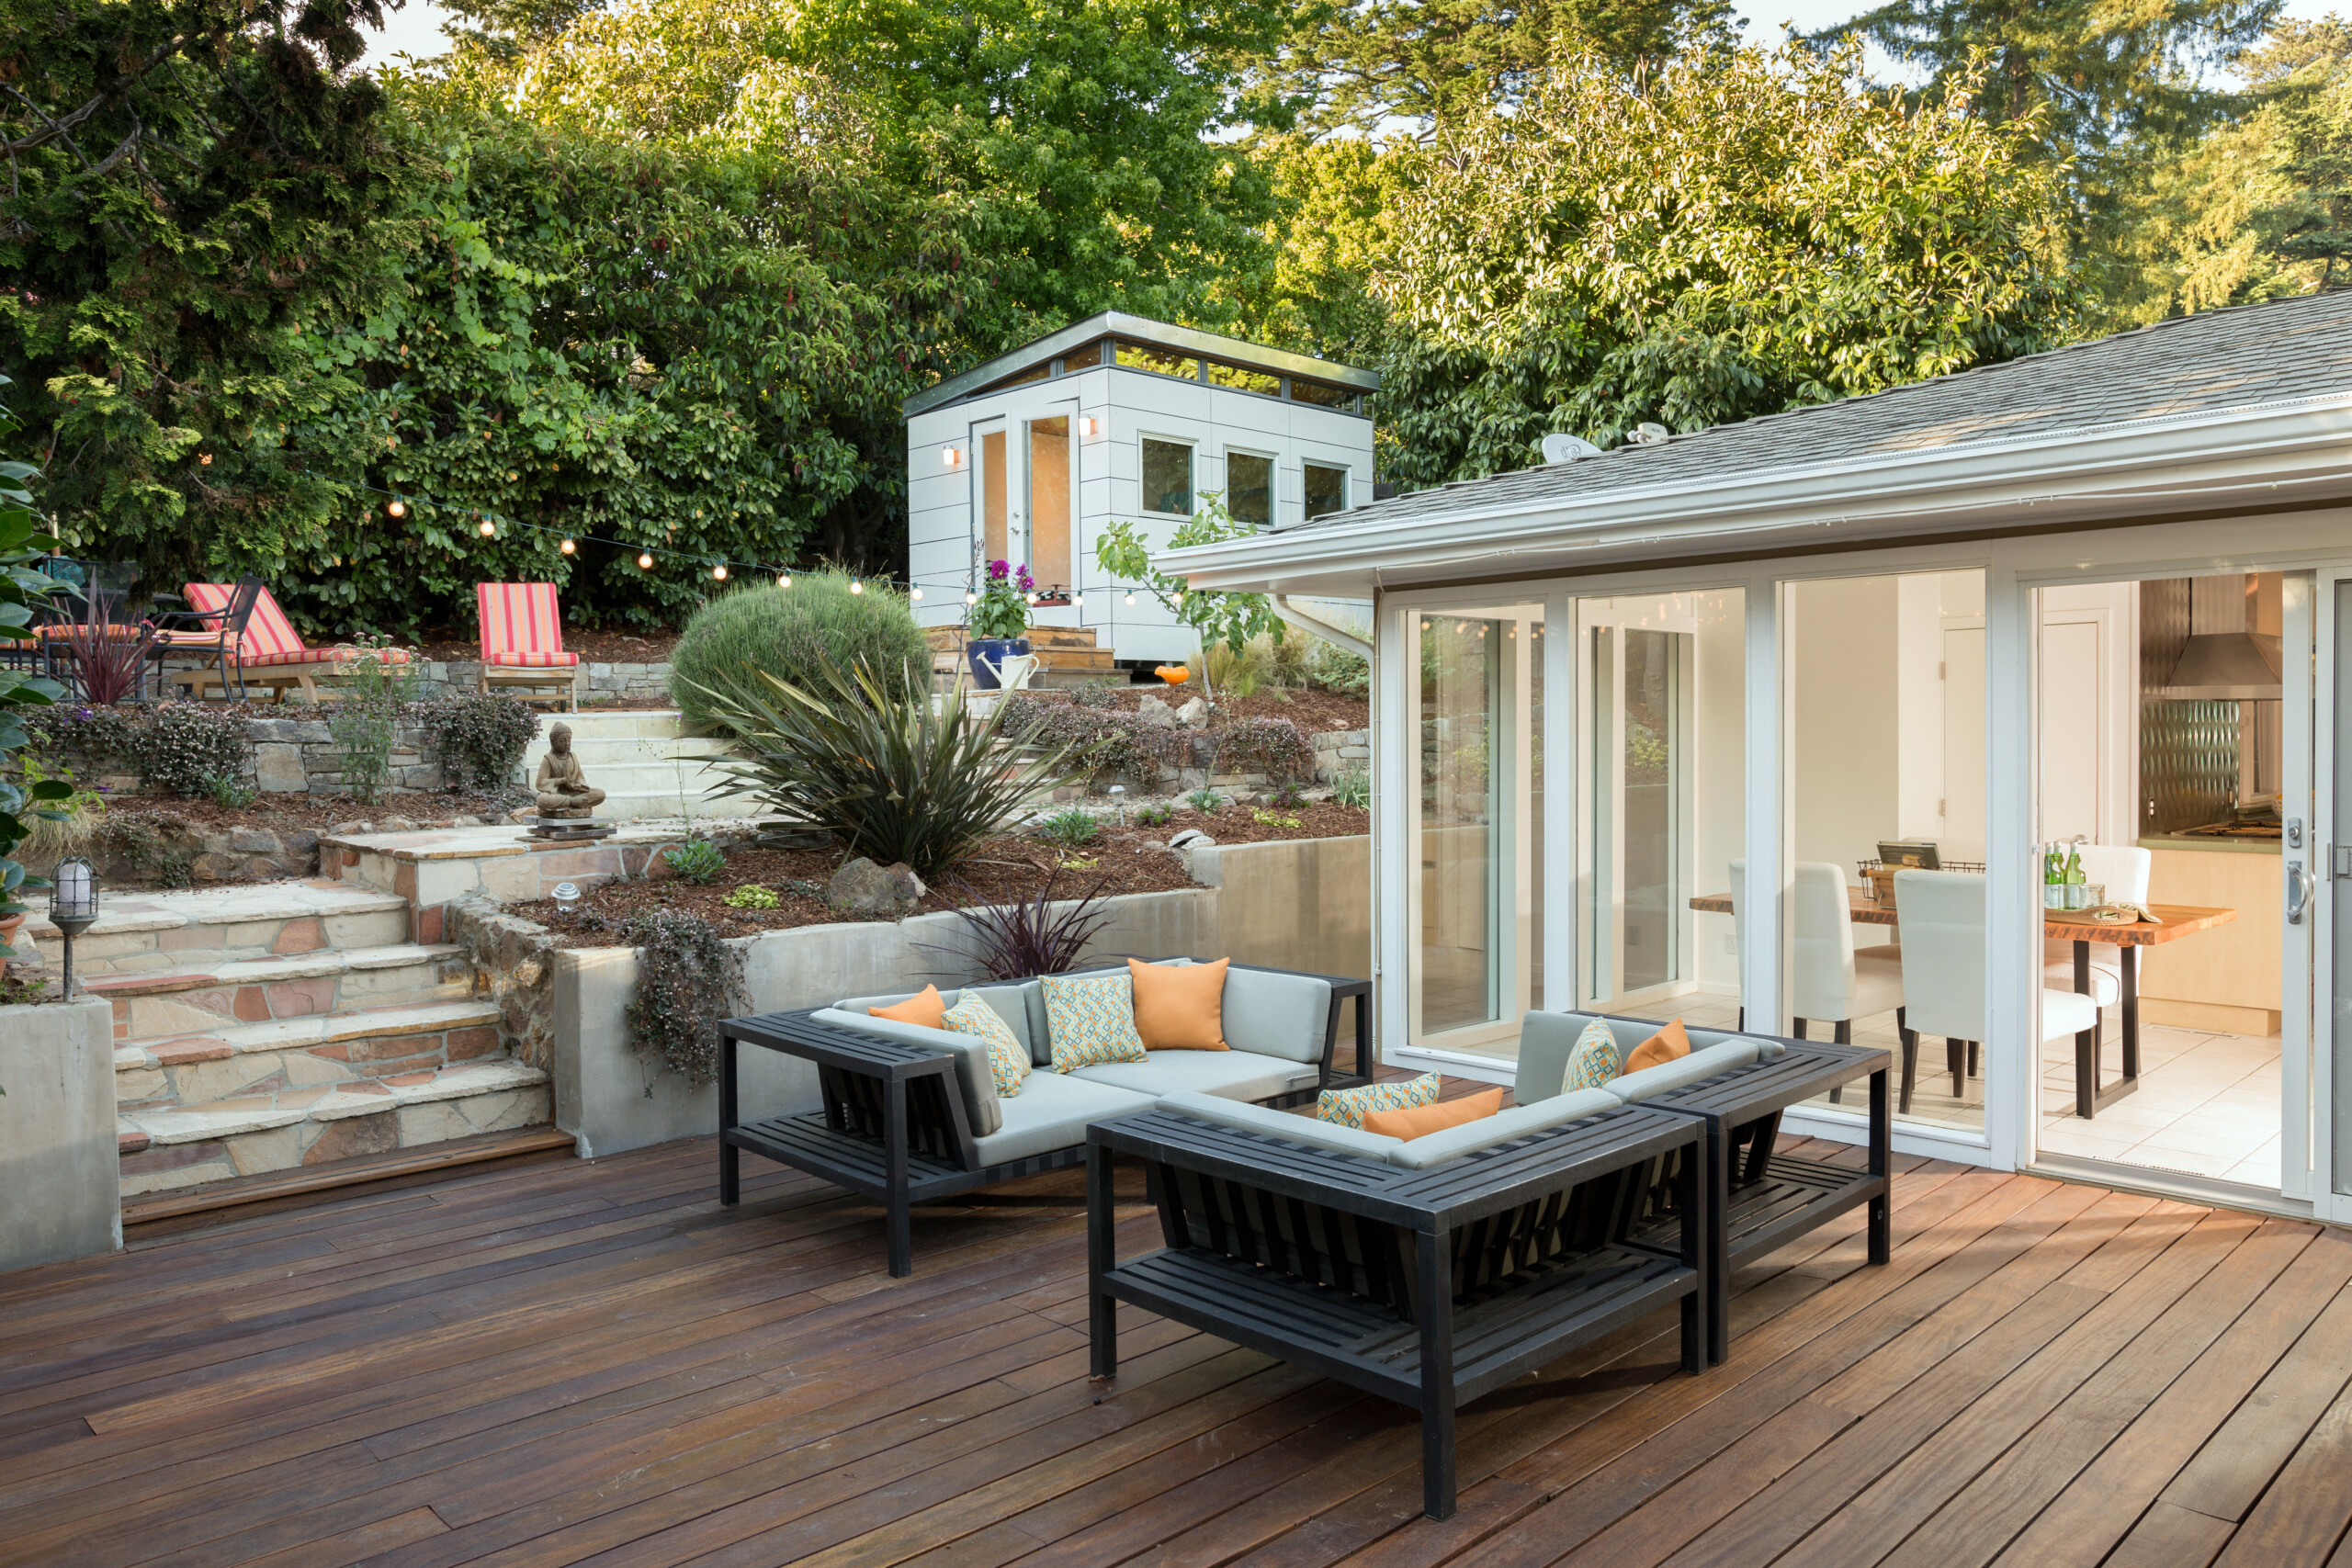 Τα Deck Builders μπορούν να βελτιώσουν τον υπαίθριο χώρο διαβίωσης του σπιτιού σας